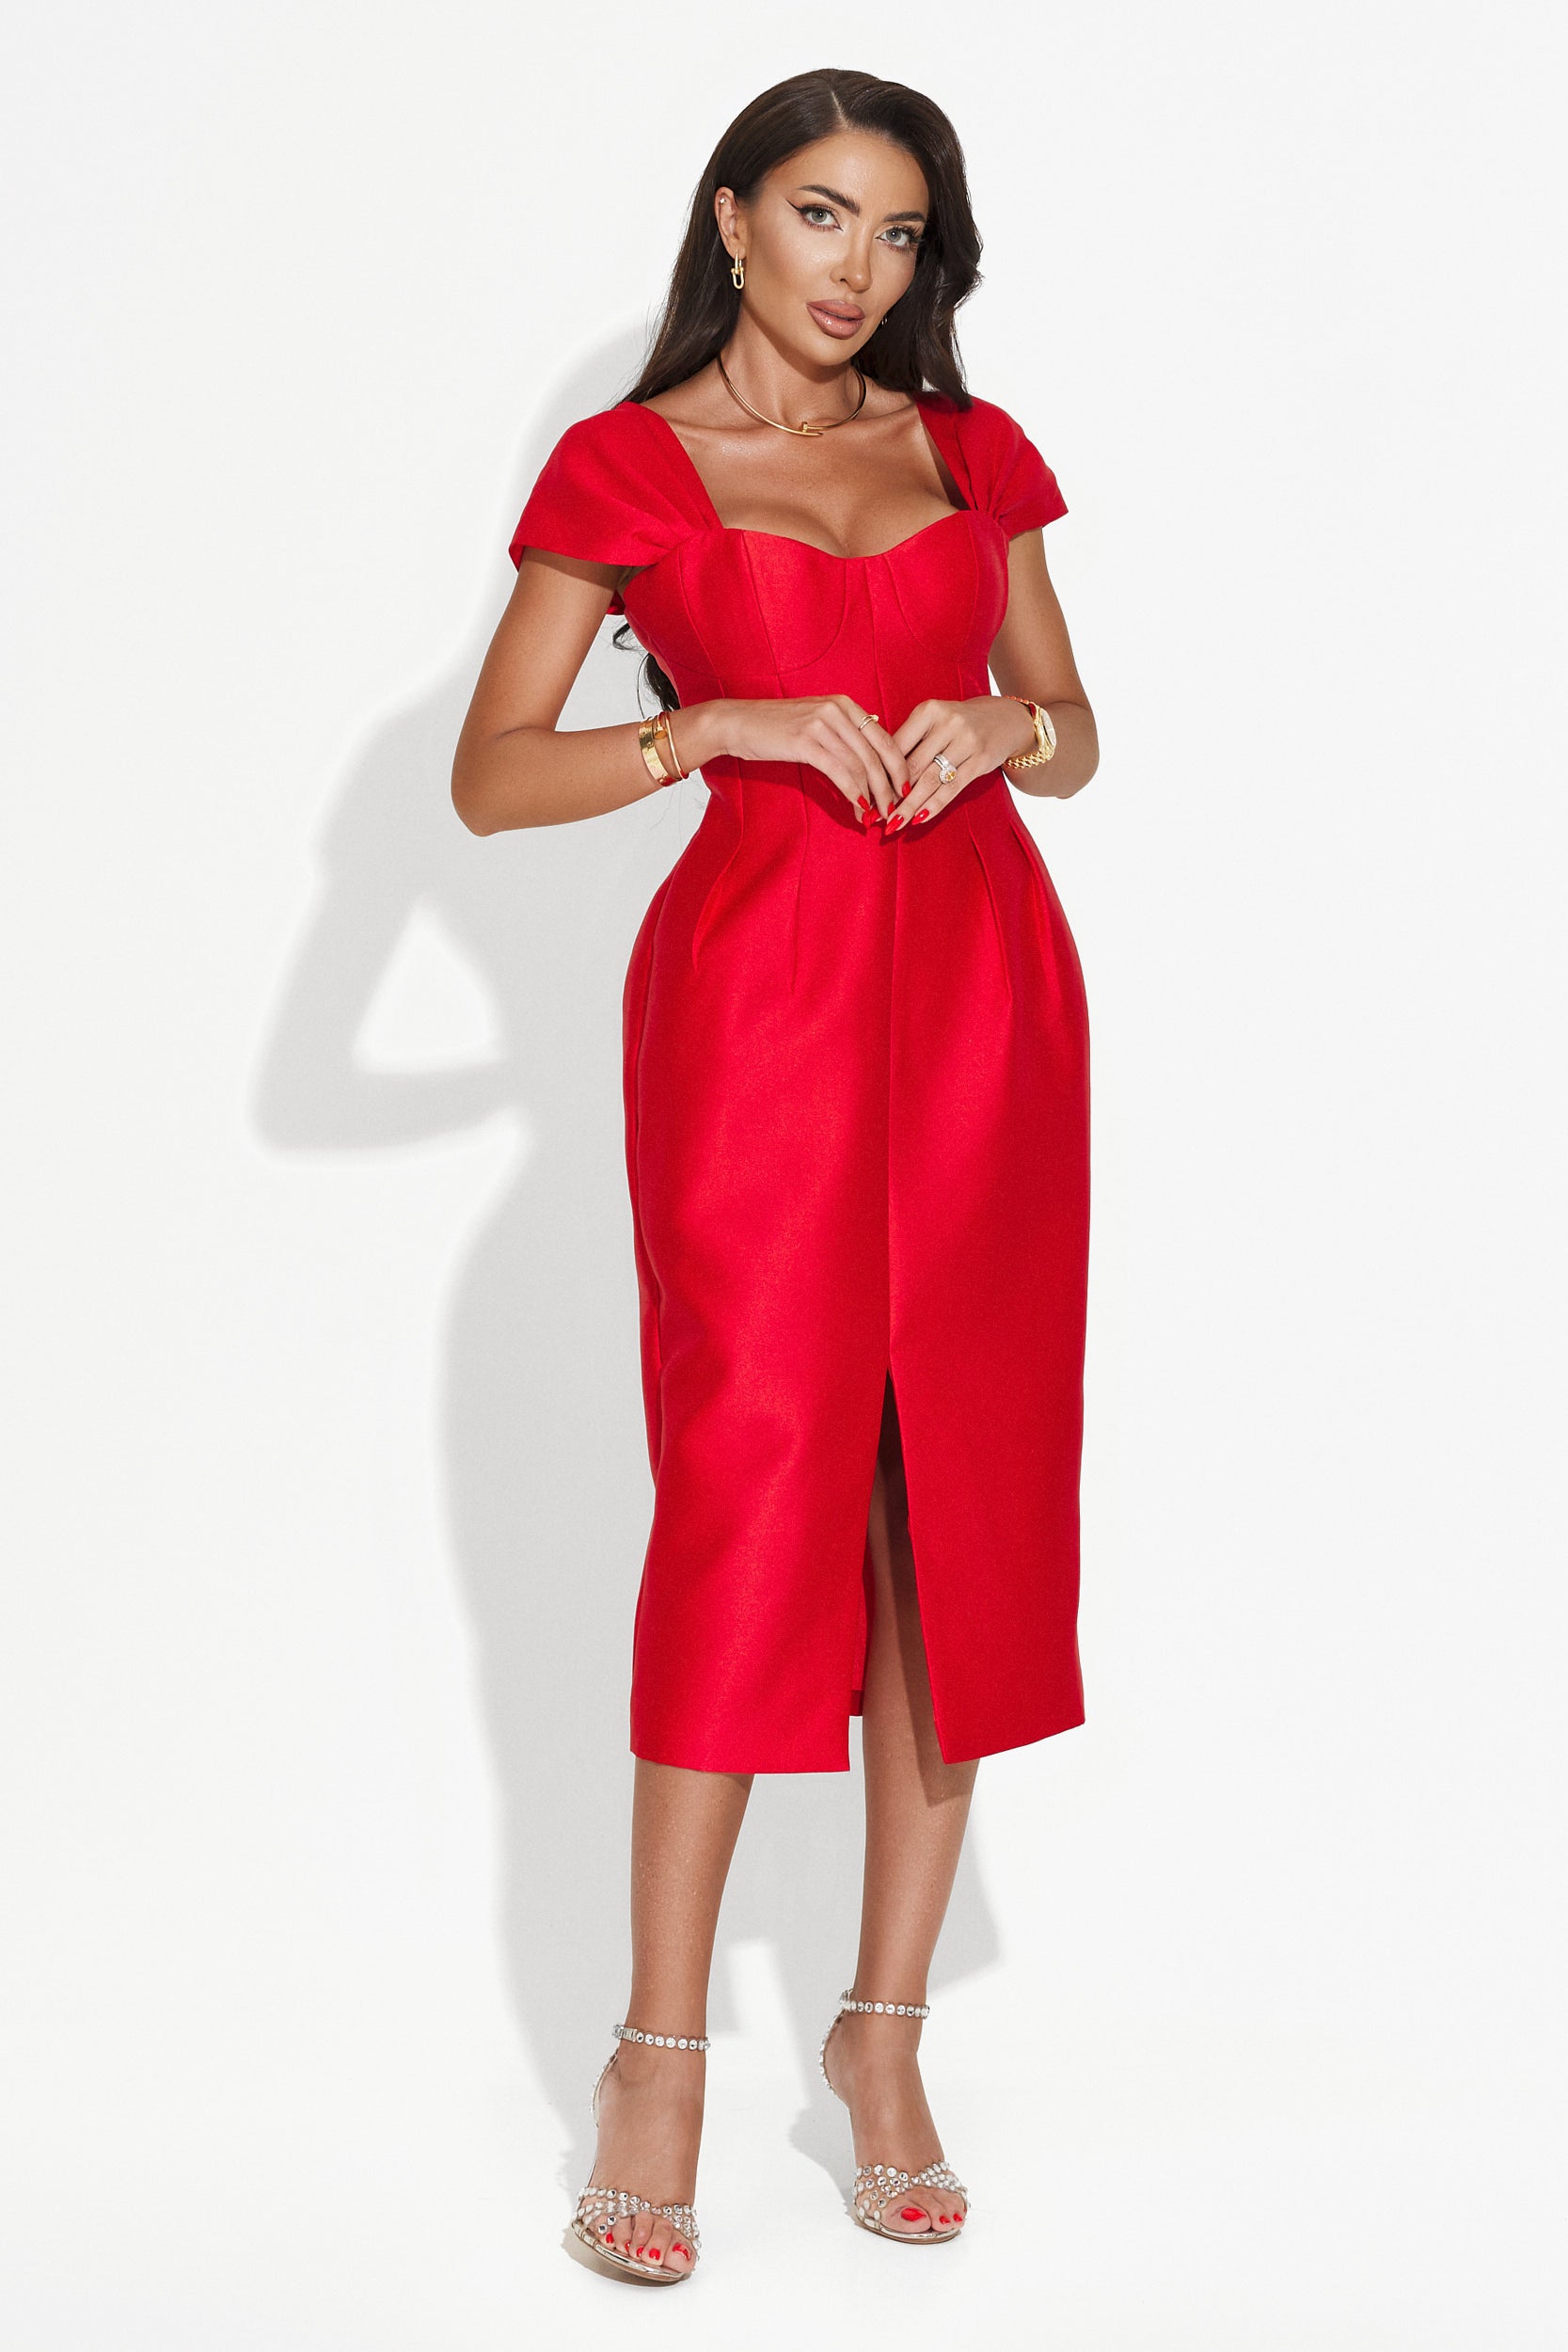 Letona Bogas hosszú piros női ruha